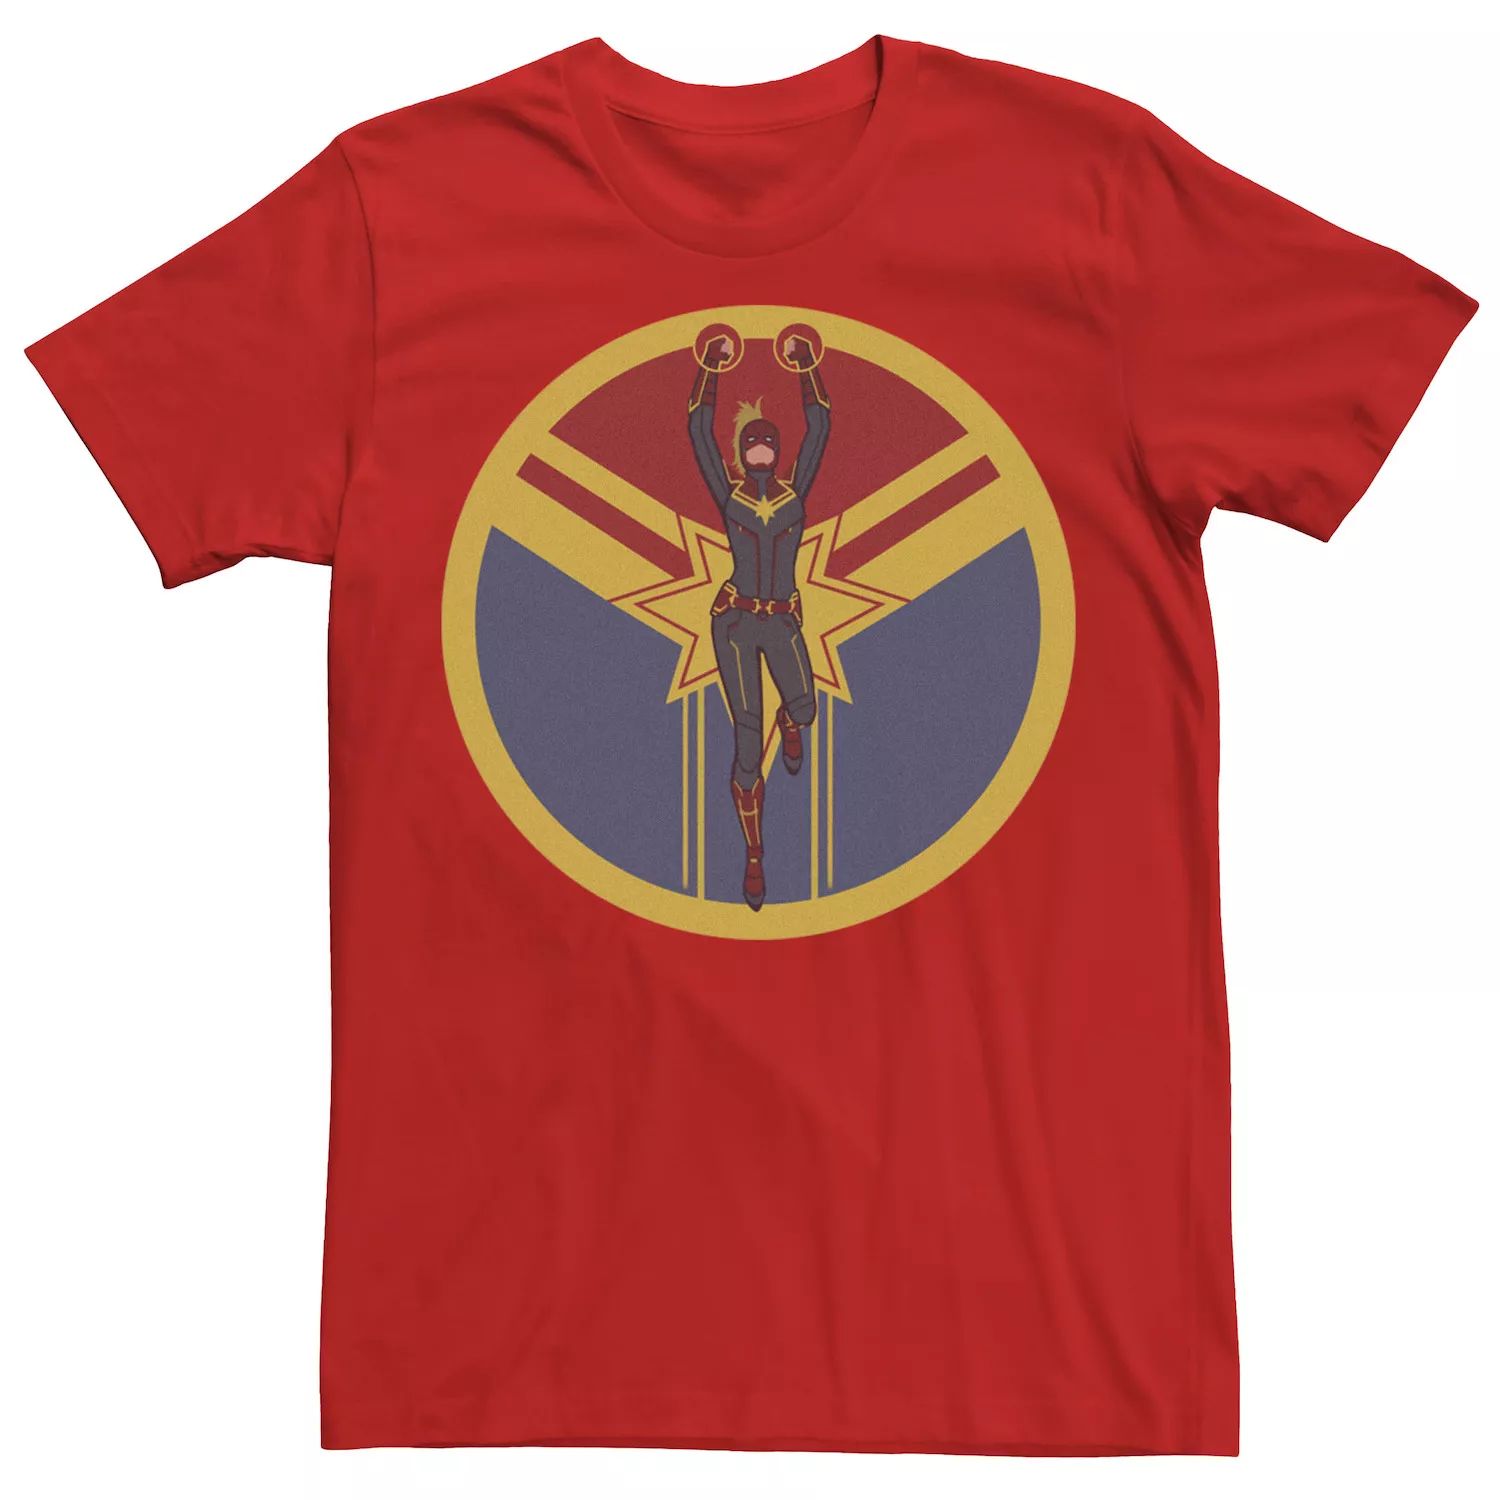 Мужская футболка с логотипом и графическим рисунком «Мстители: Финал» Captain Circle Marvel мужская футболка с рваным винтажным круглым логотипом marvel captain marvel и графическим рисунком